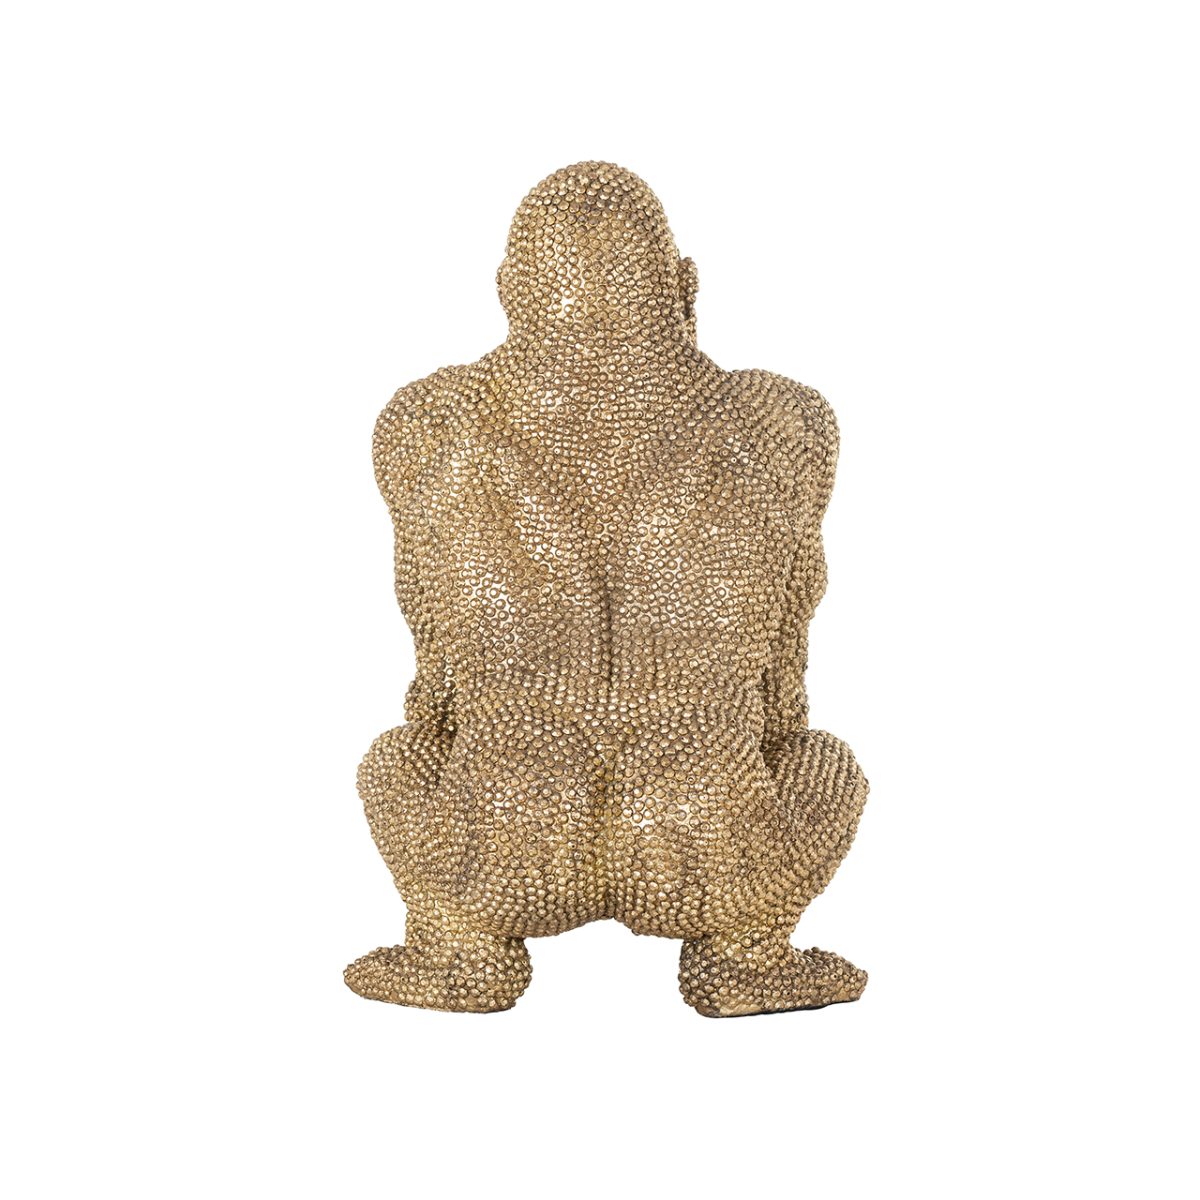 -AD-0007 - Deco object Gorilla goud klein (Gold)